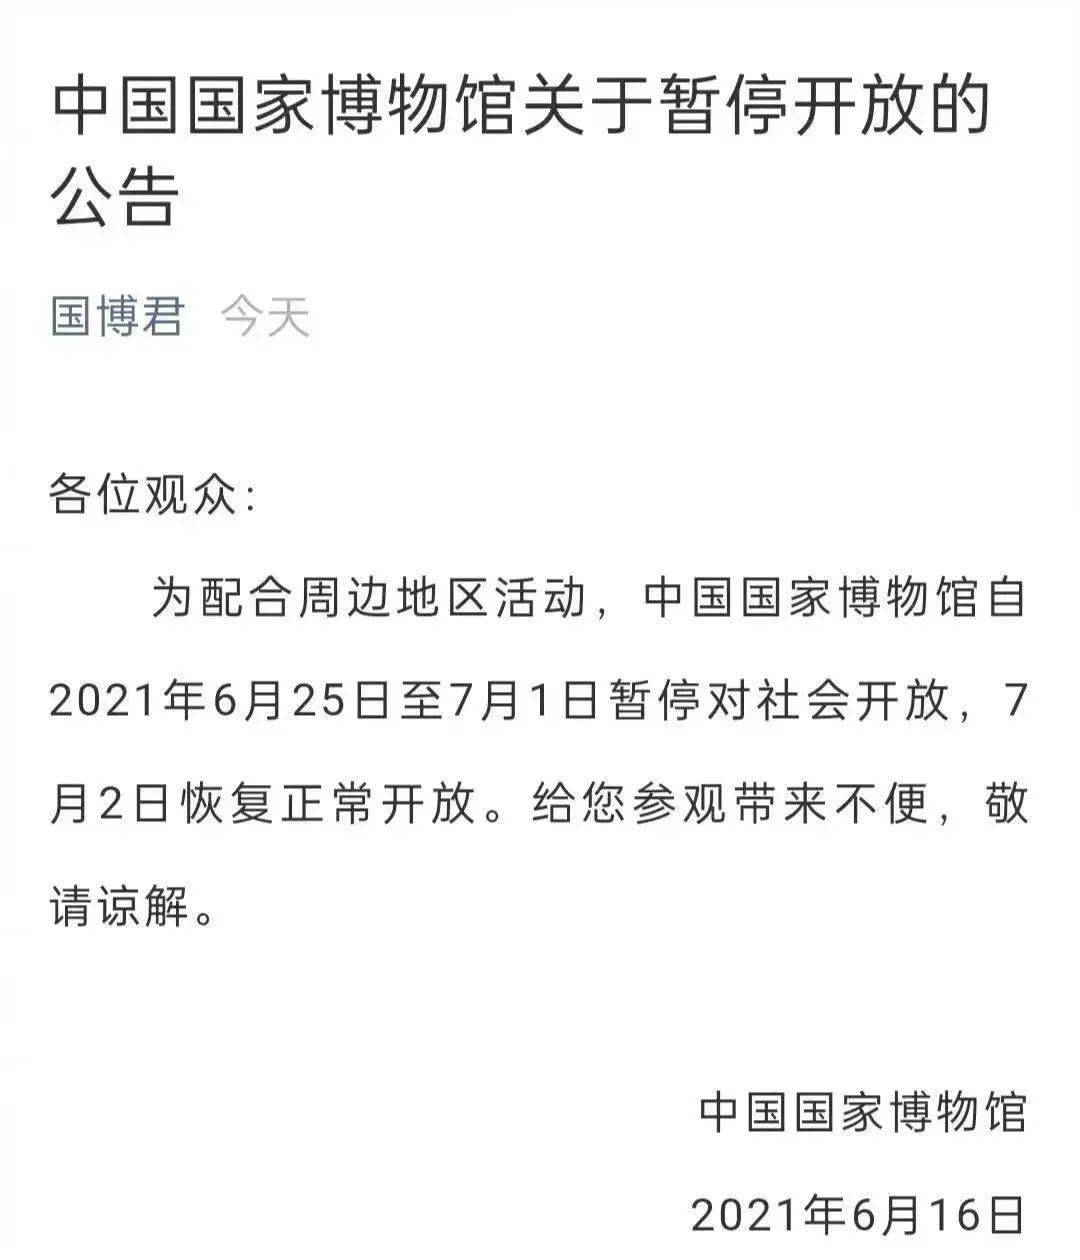 6月16日,中国国家博物馆发布公告:为配合周边地区活动,中国国家博物